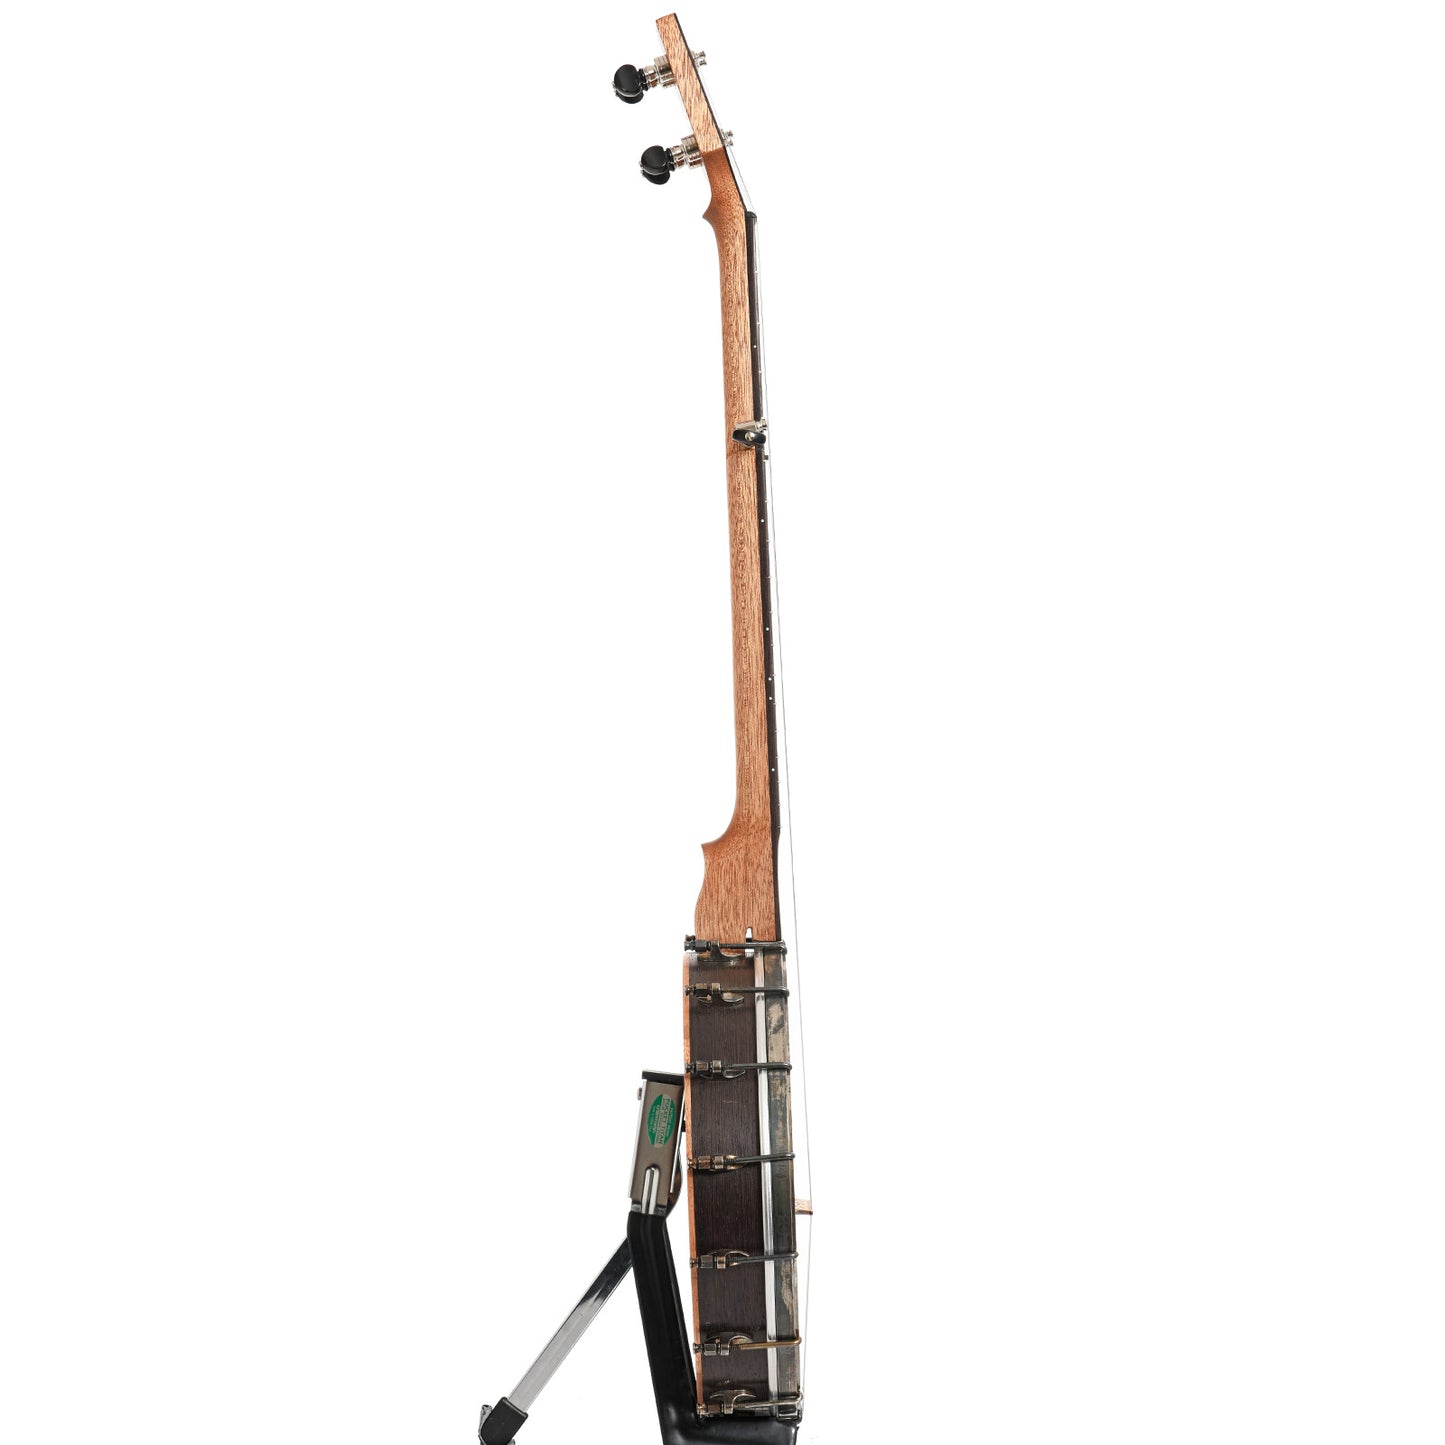 Image 13 of Dogwood Banjo Co. 12" Openback Banjo, No. 189, with Gigbag - SKU# DW189 : Product Type Open Back Banjos : Elderly Instruments